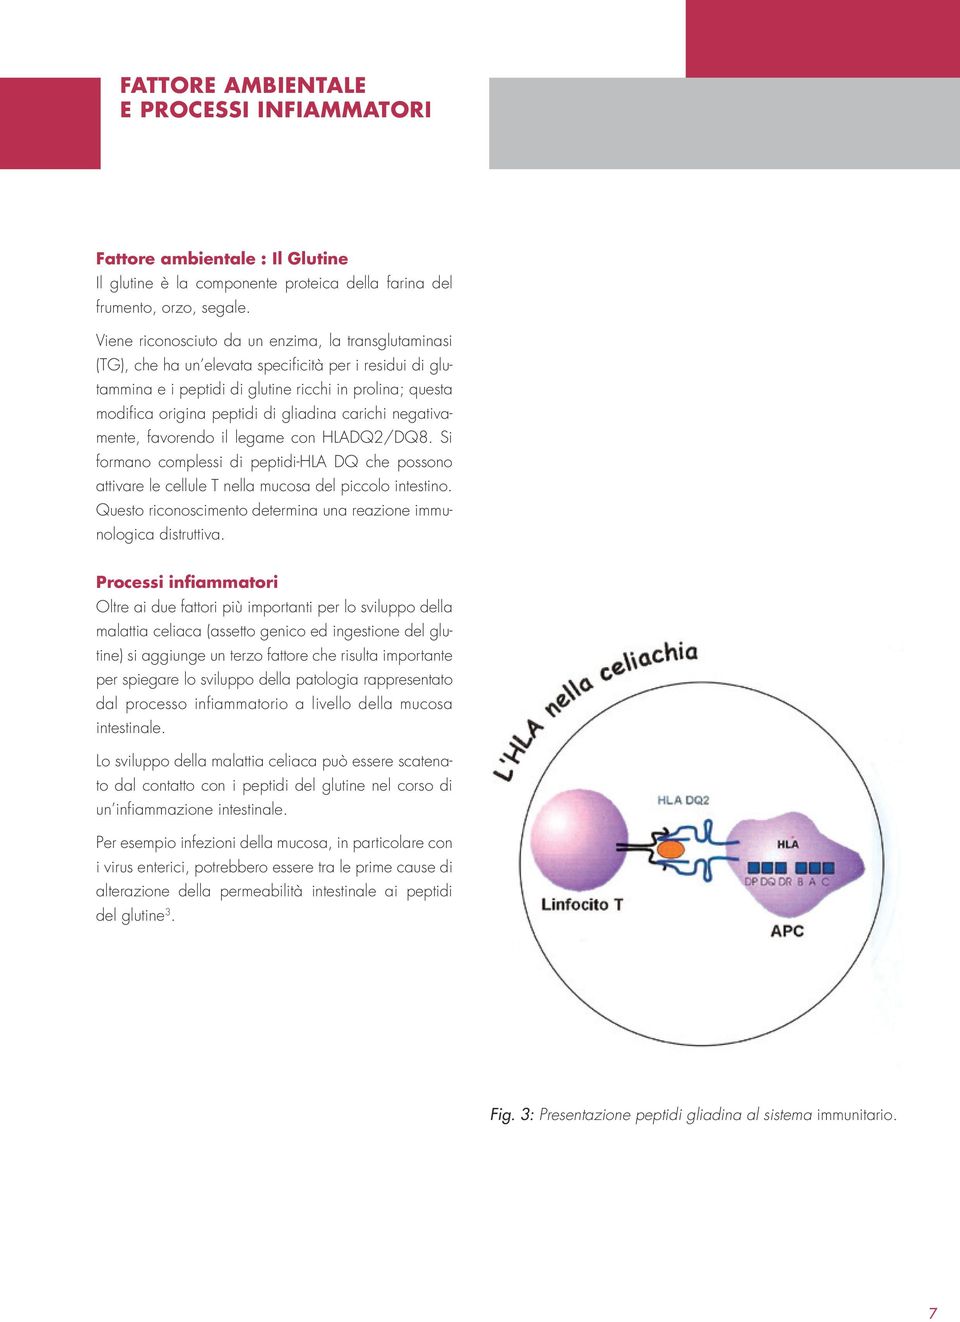 gliadina carichi negativamente, favorendo il legame con HLADQ2/DQ8. Si formano complessi di peptidi-hla DQ che possono attivare le cellule T nella mucosa del piccolo intestino.